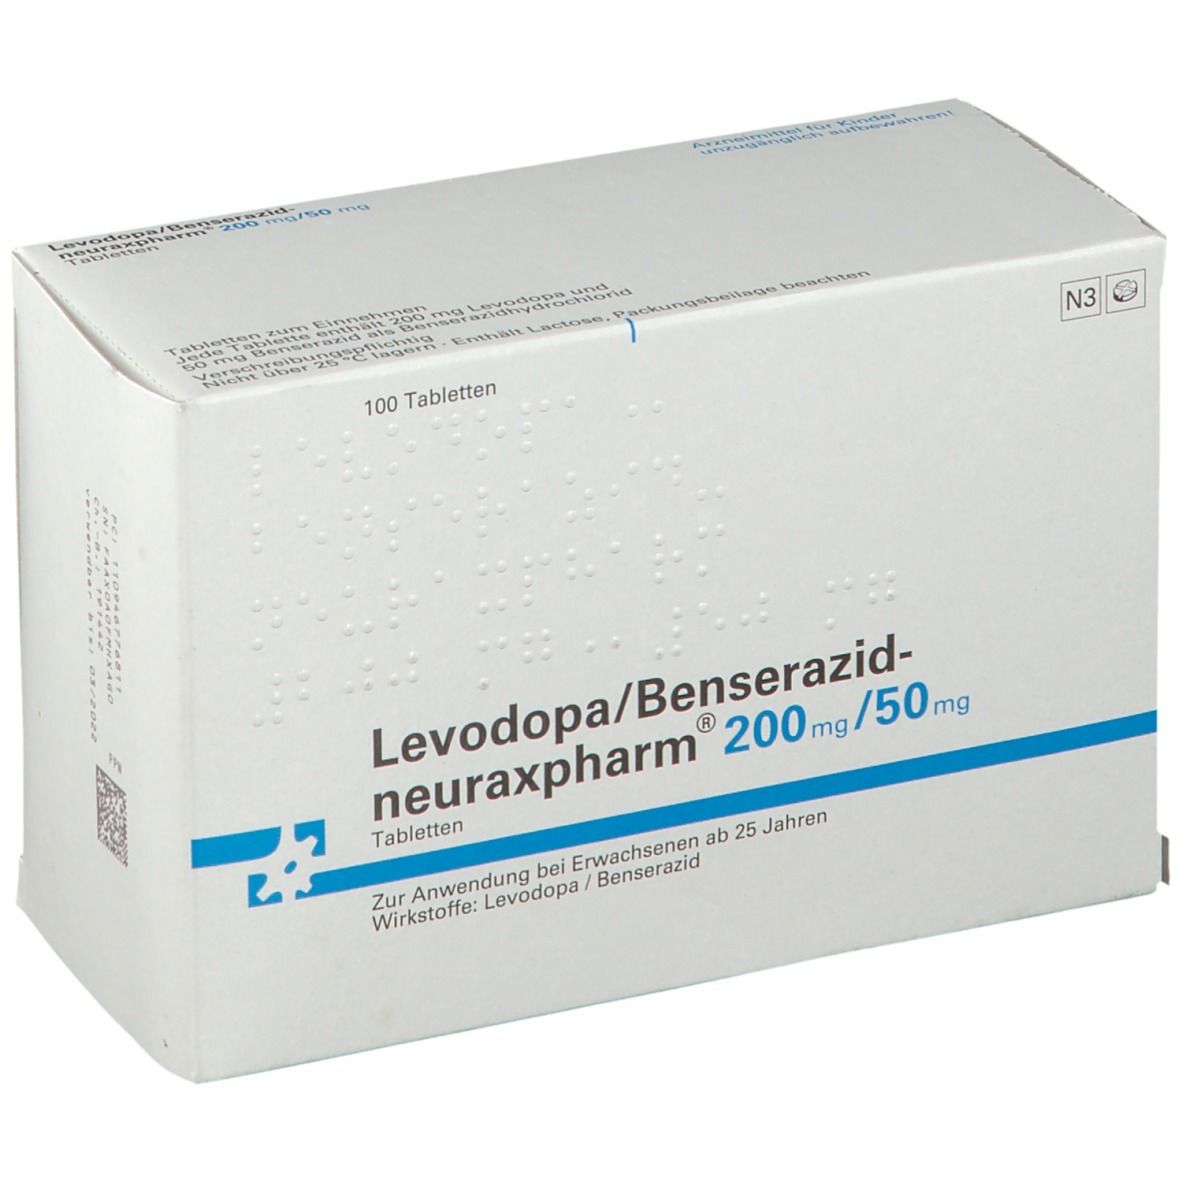 Levodopa/Benserazid-neuraxpharm® 200 mg/50 mg